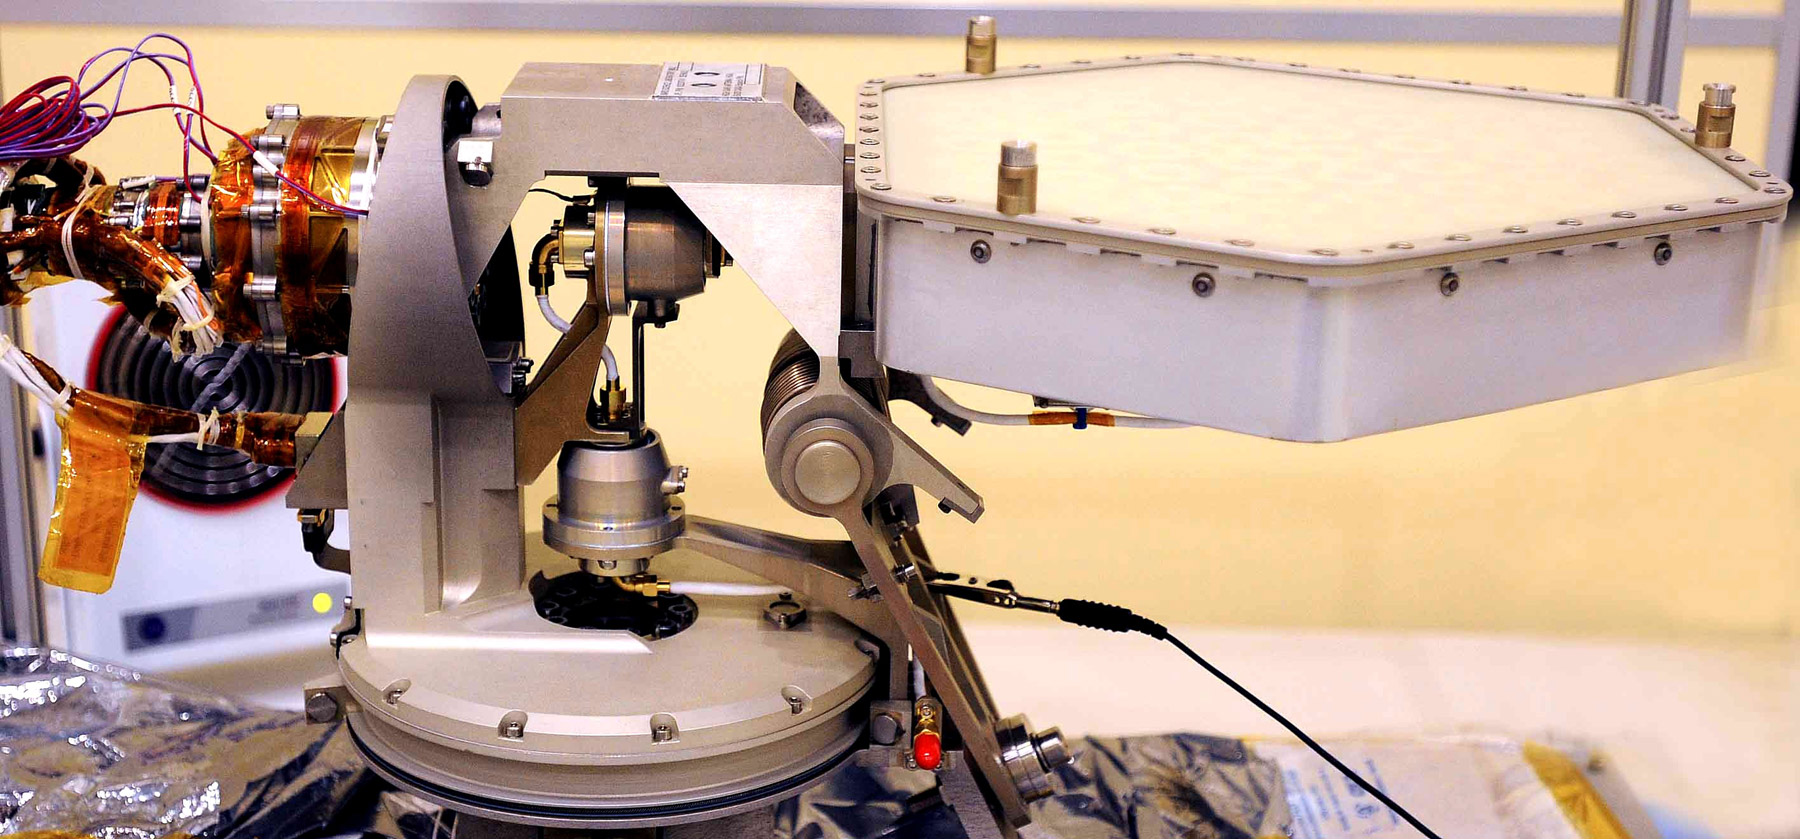 Modèle de vol de l'antenne à gain élevé construite par l'industrie spatiale espagnole qui sera installée sur le rover martien Curiosity. Crédits Astrium Spain